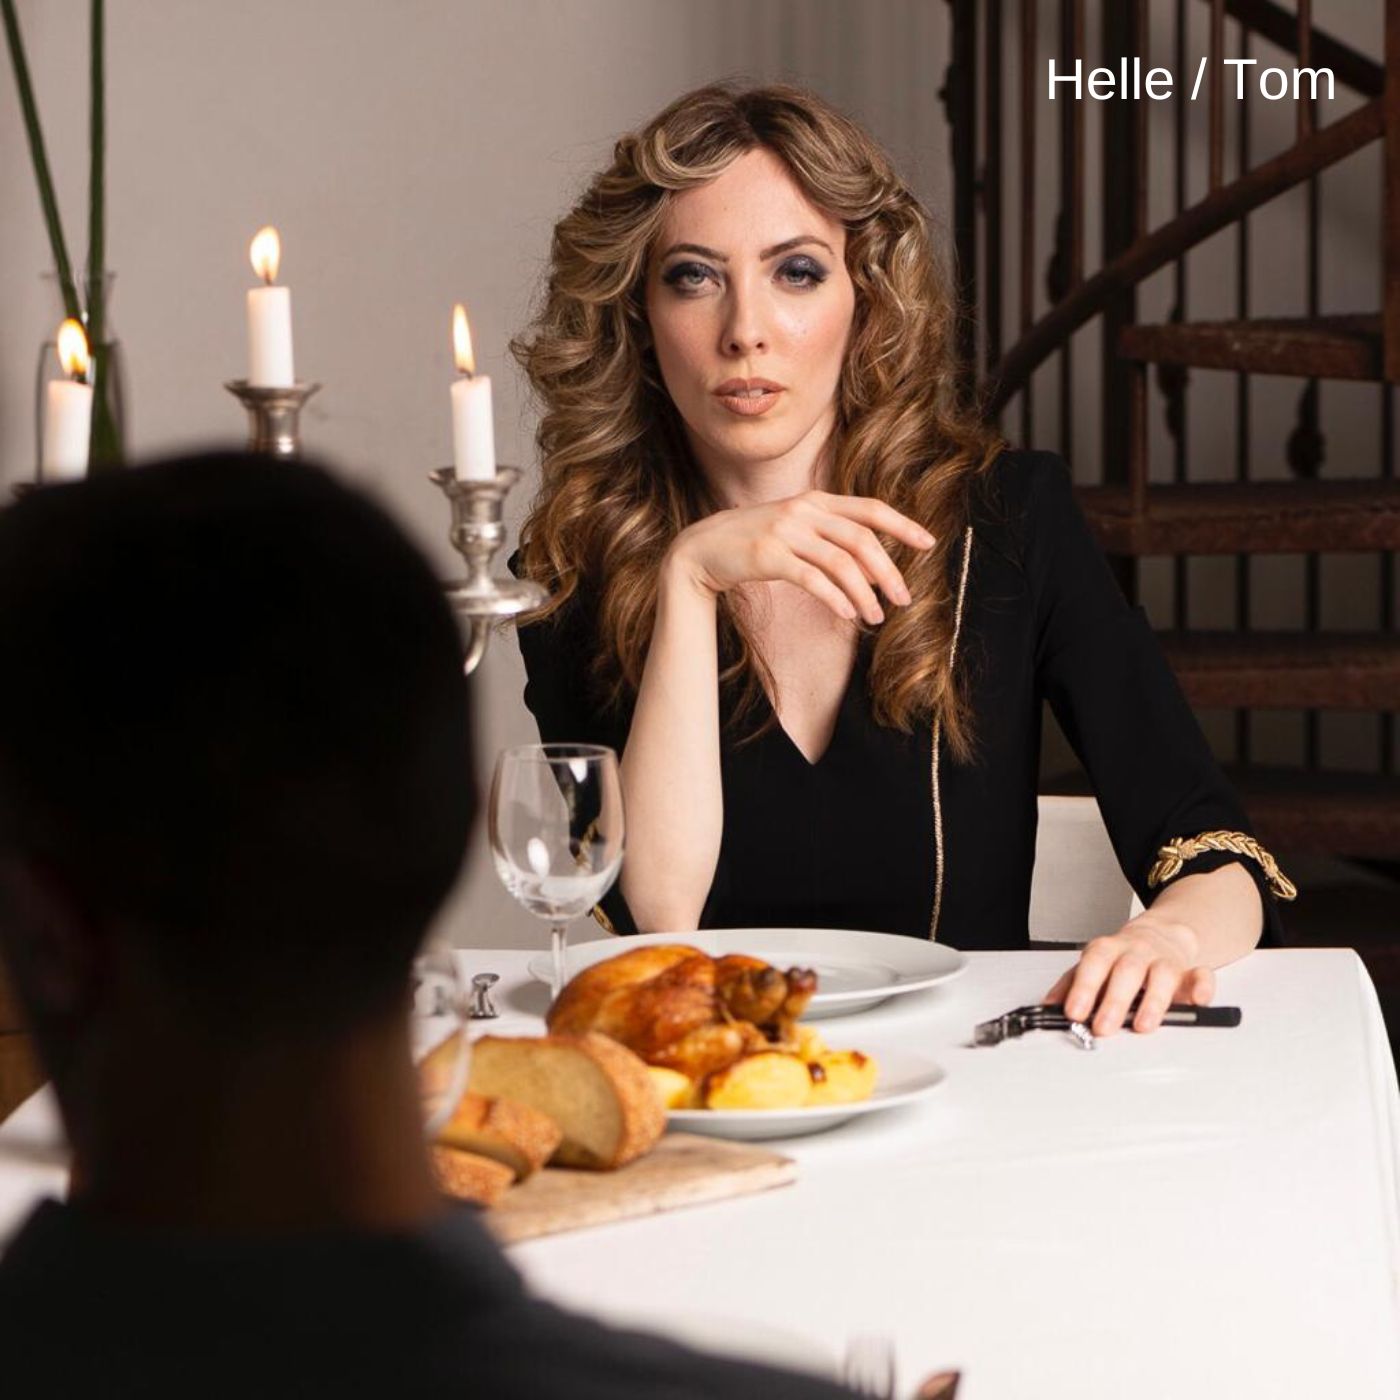 Foto 1 - HELLE  “Tom” è il nuovo singolo che affronta il delicato tema delle dipendenze con il sound elettro pop tipico dell’artista